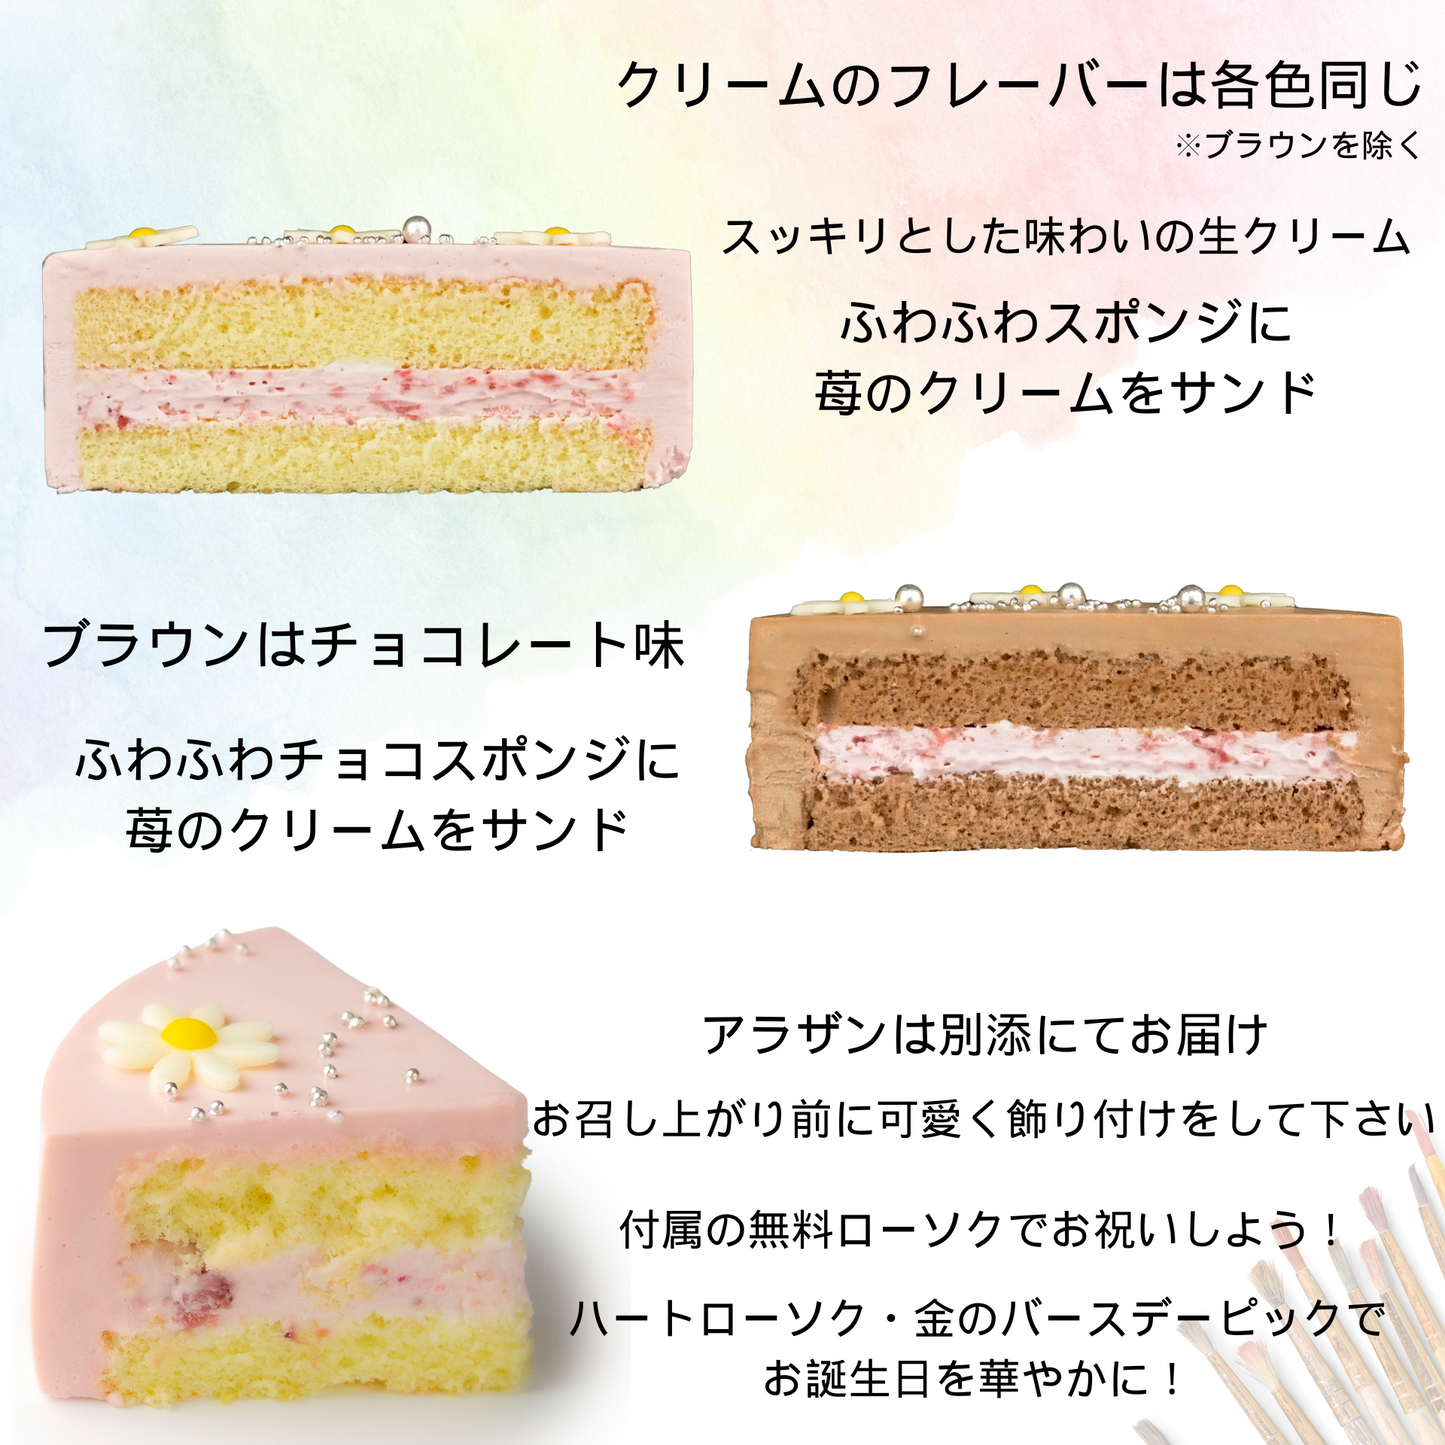 【宅配】センイルケーキ 4号サイズ 13.5cm 2人～4人分 約270g 【天然色素のみ使用】